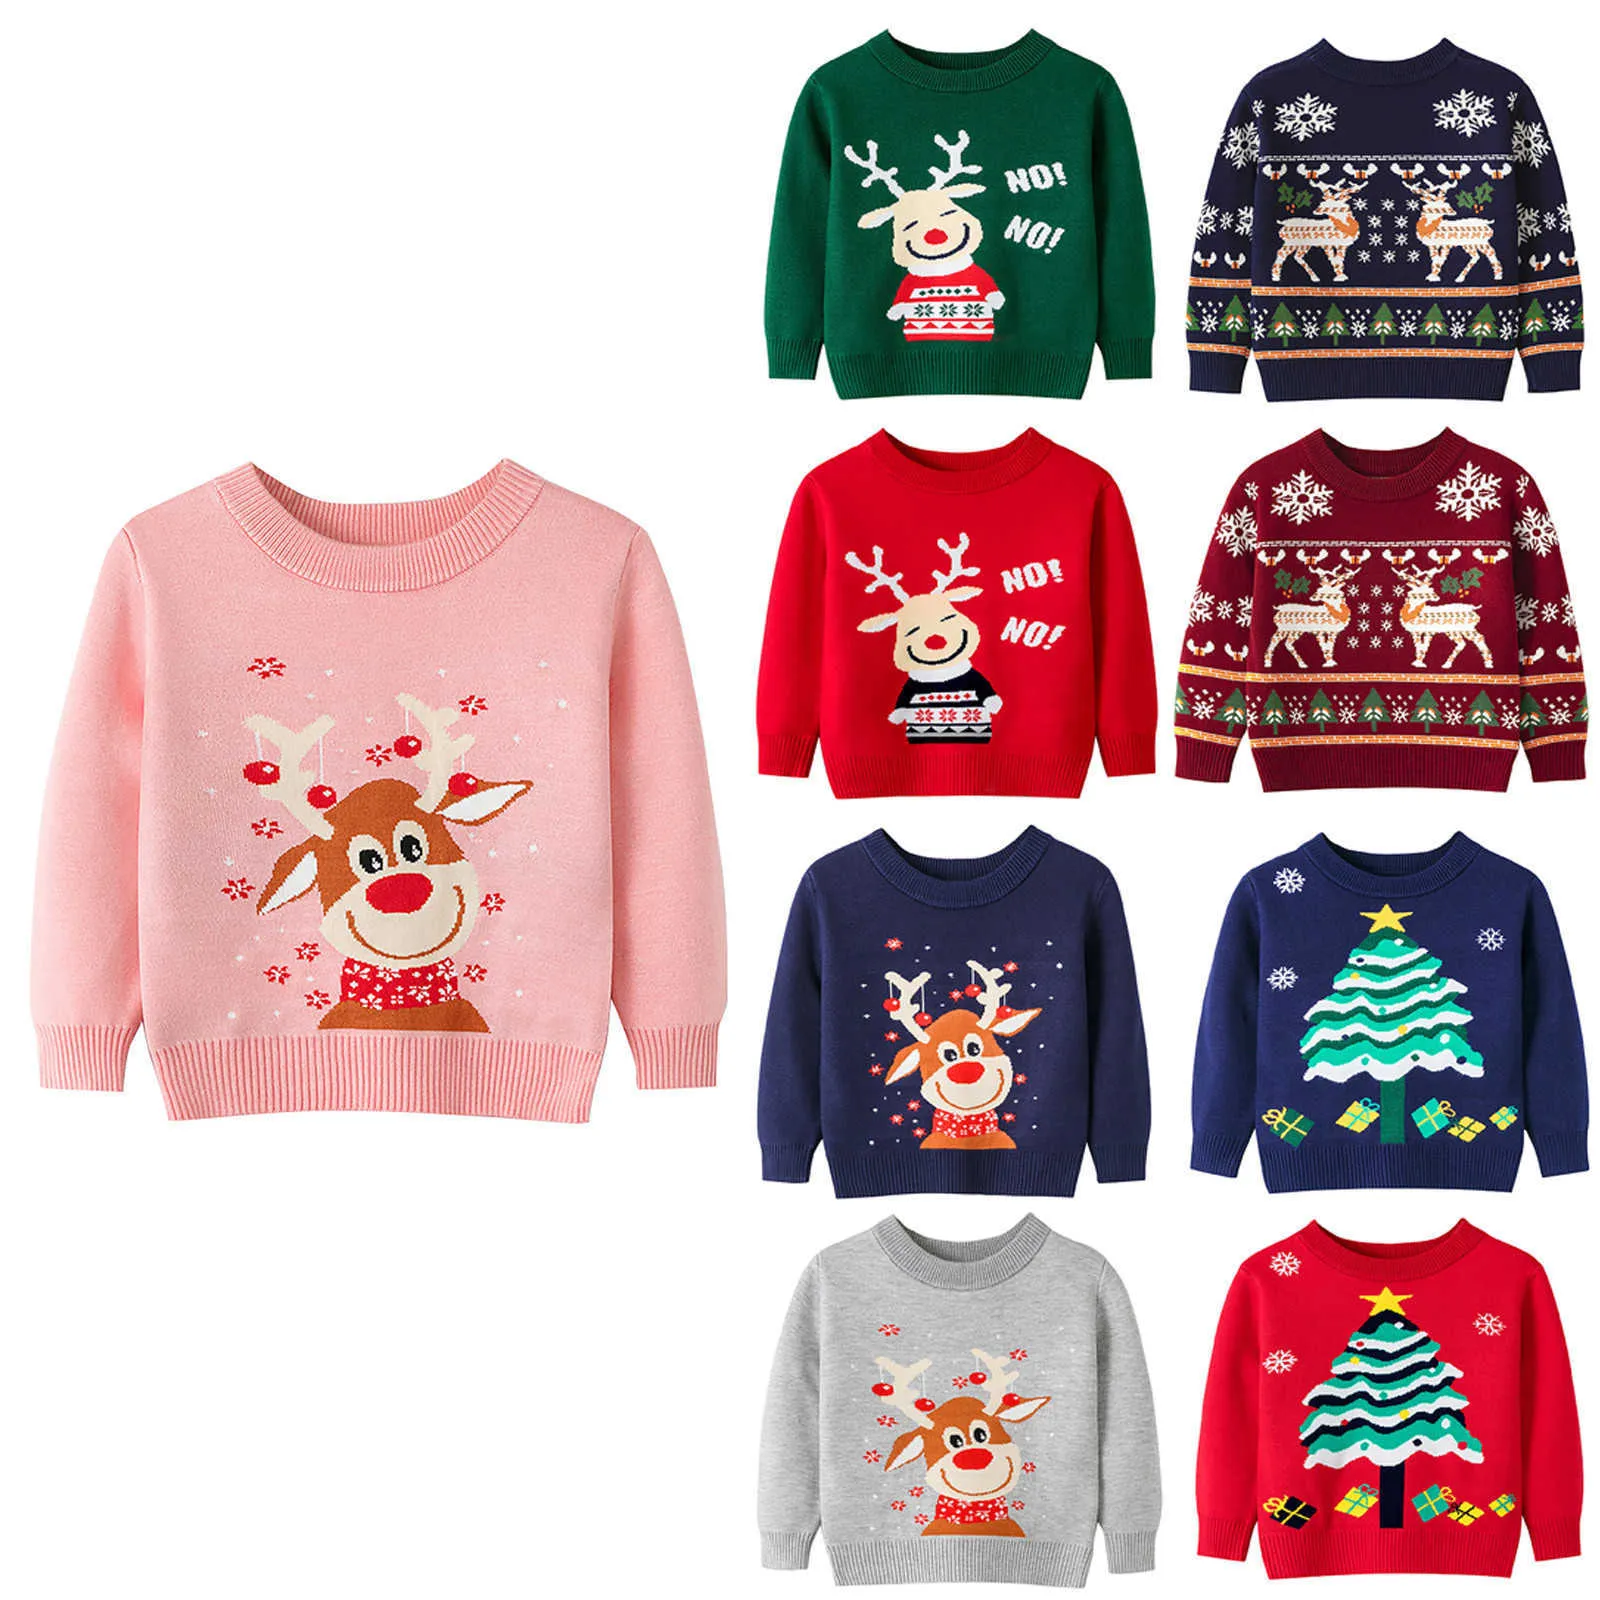 Maluch Młodzież Teen Boys Girls Christmas Cartoon Knit Print sweter Knitwear 2021 Wiosna Jesień Niemowlę Odzież Baby Y1024